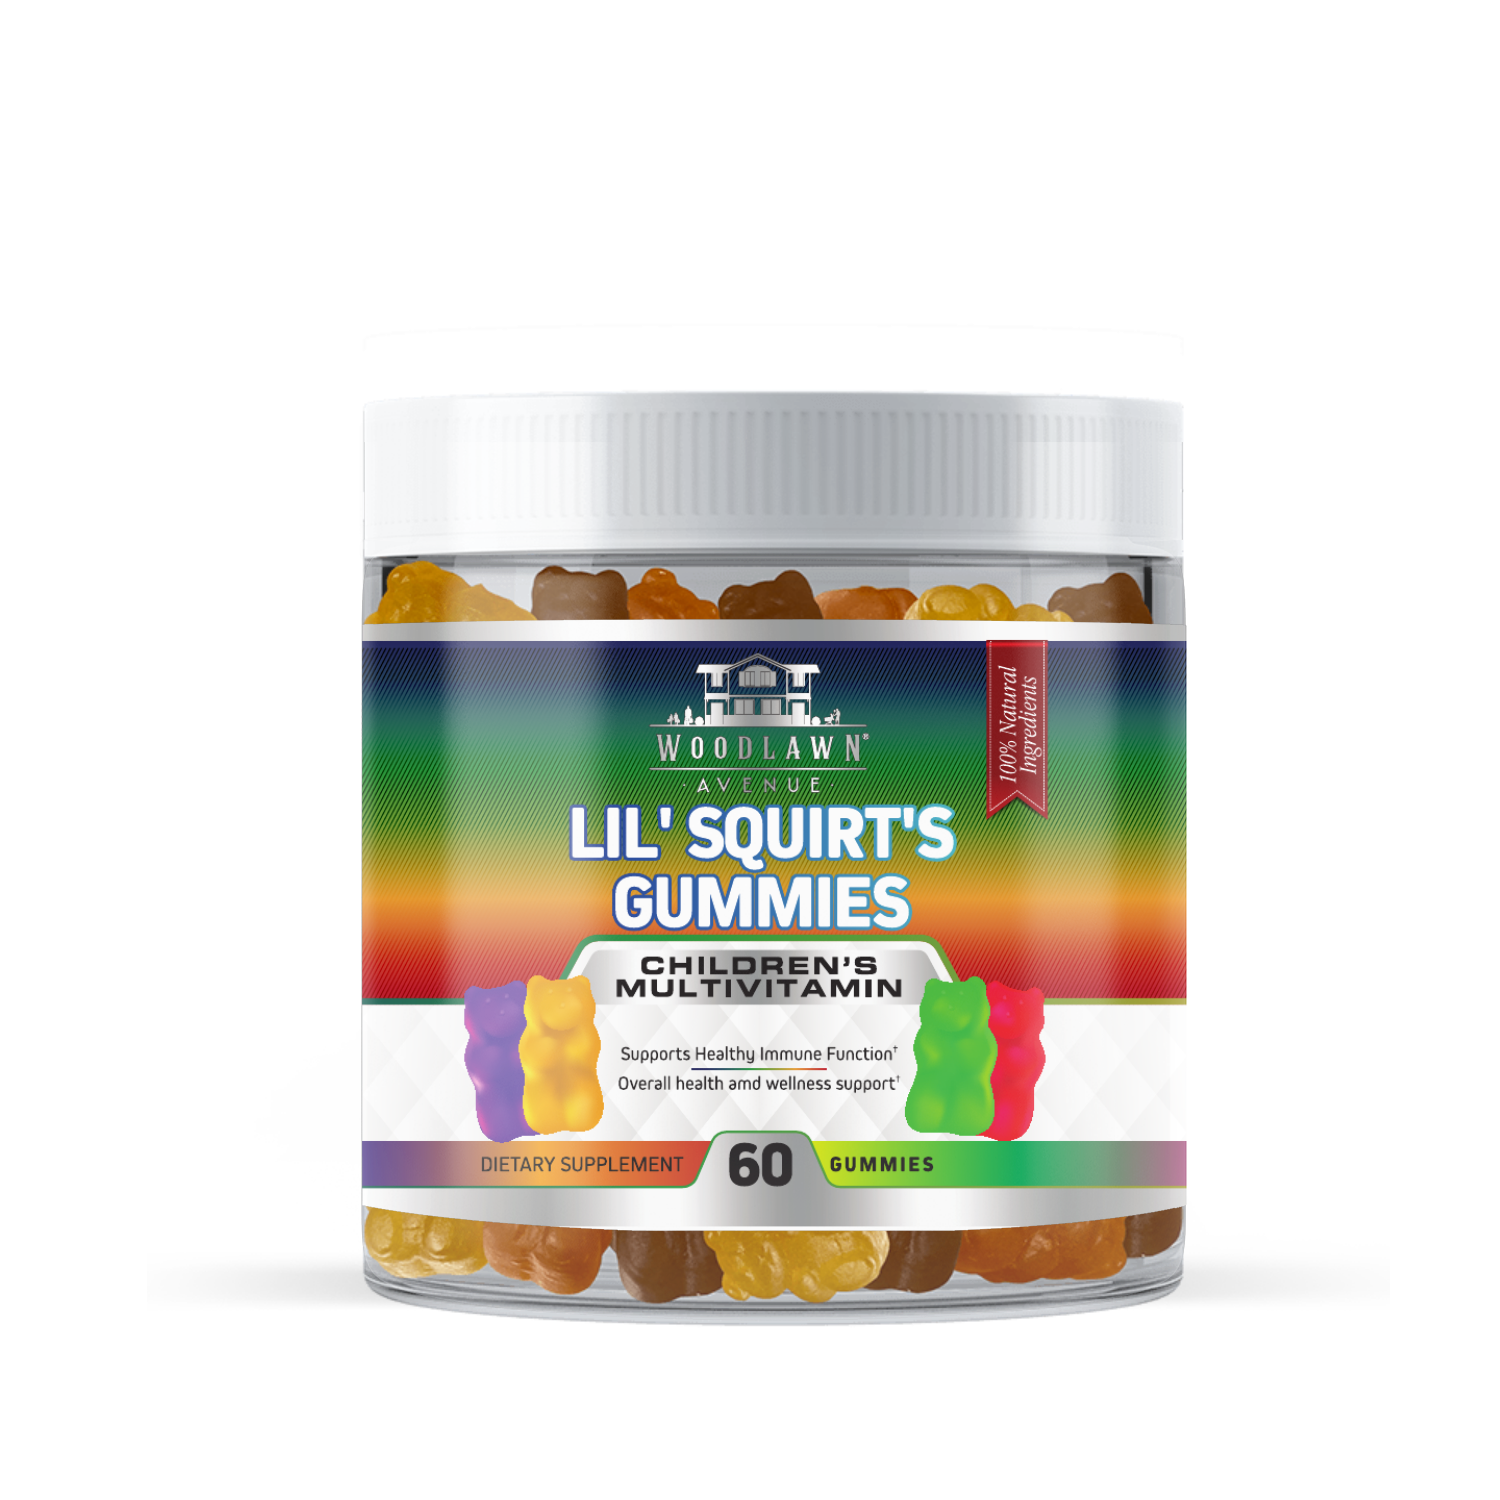 LIL' Squirt's Gummies - Children's Multivitamin Gummies